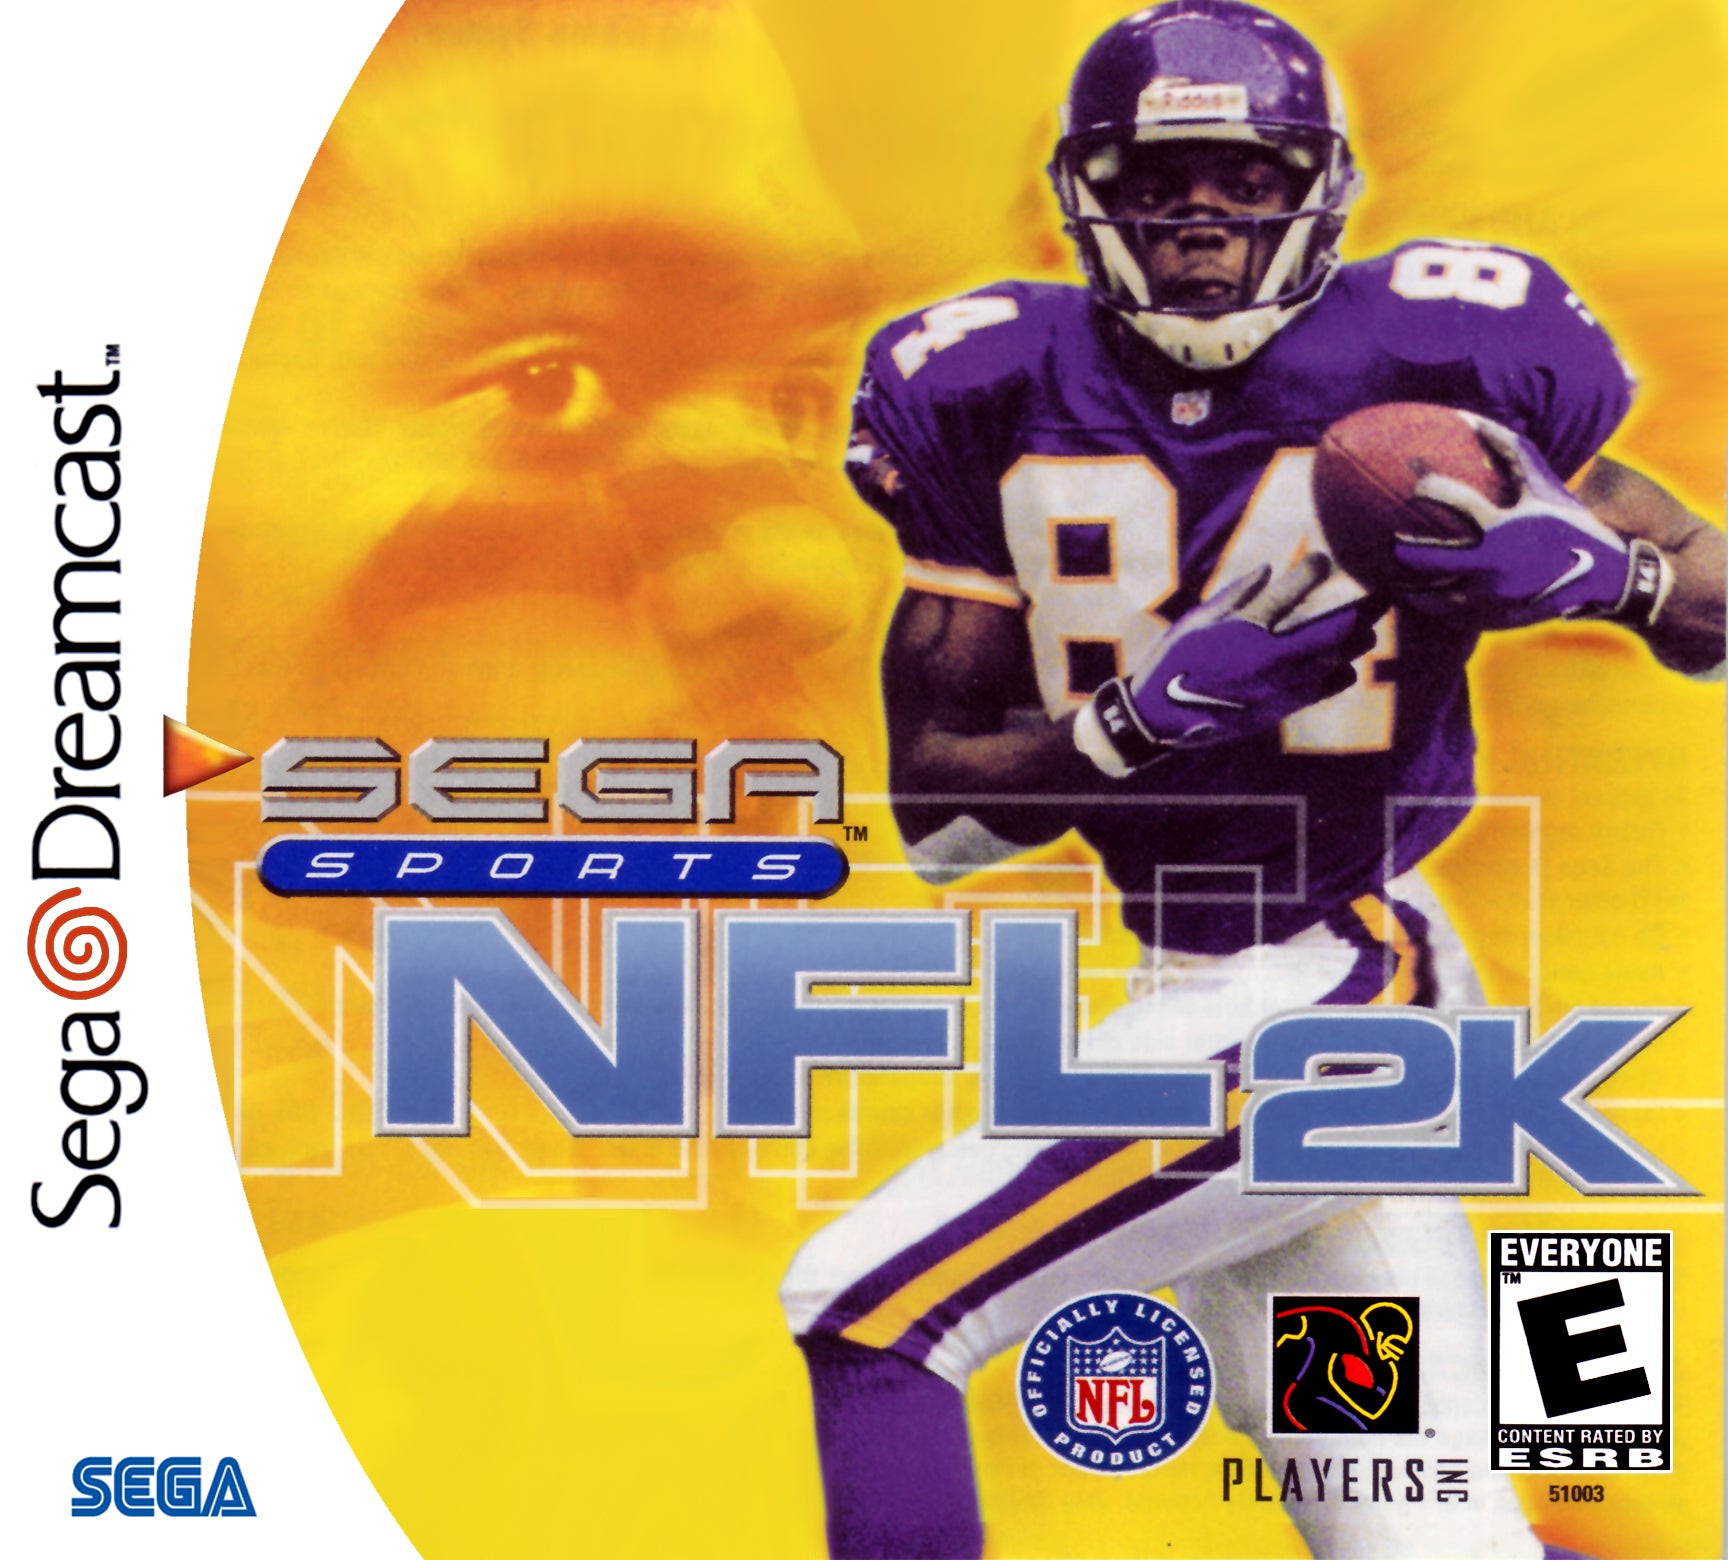 NFL 2K - Sega Dreamcast Game